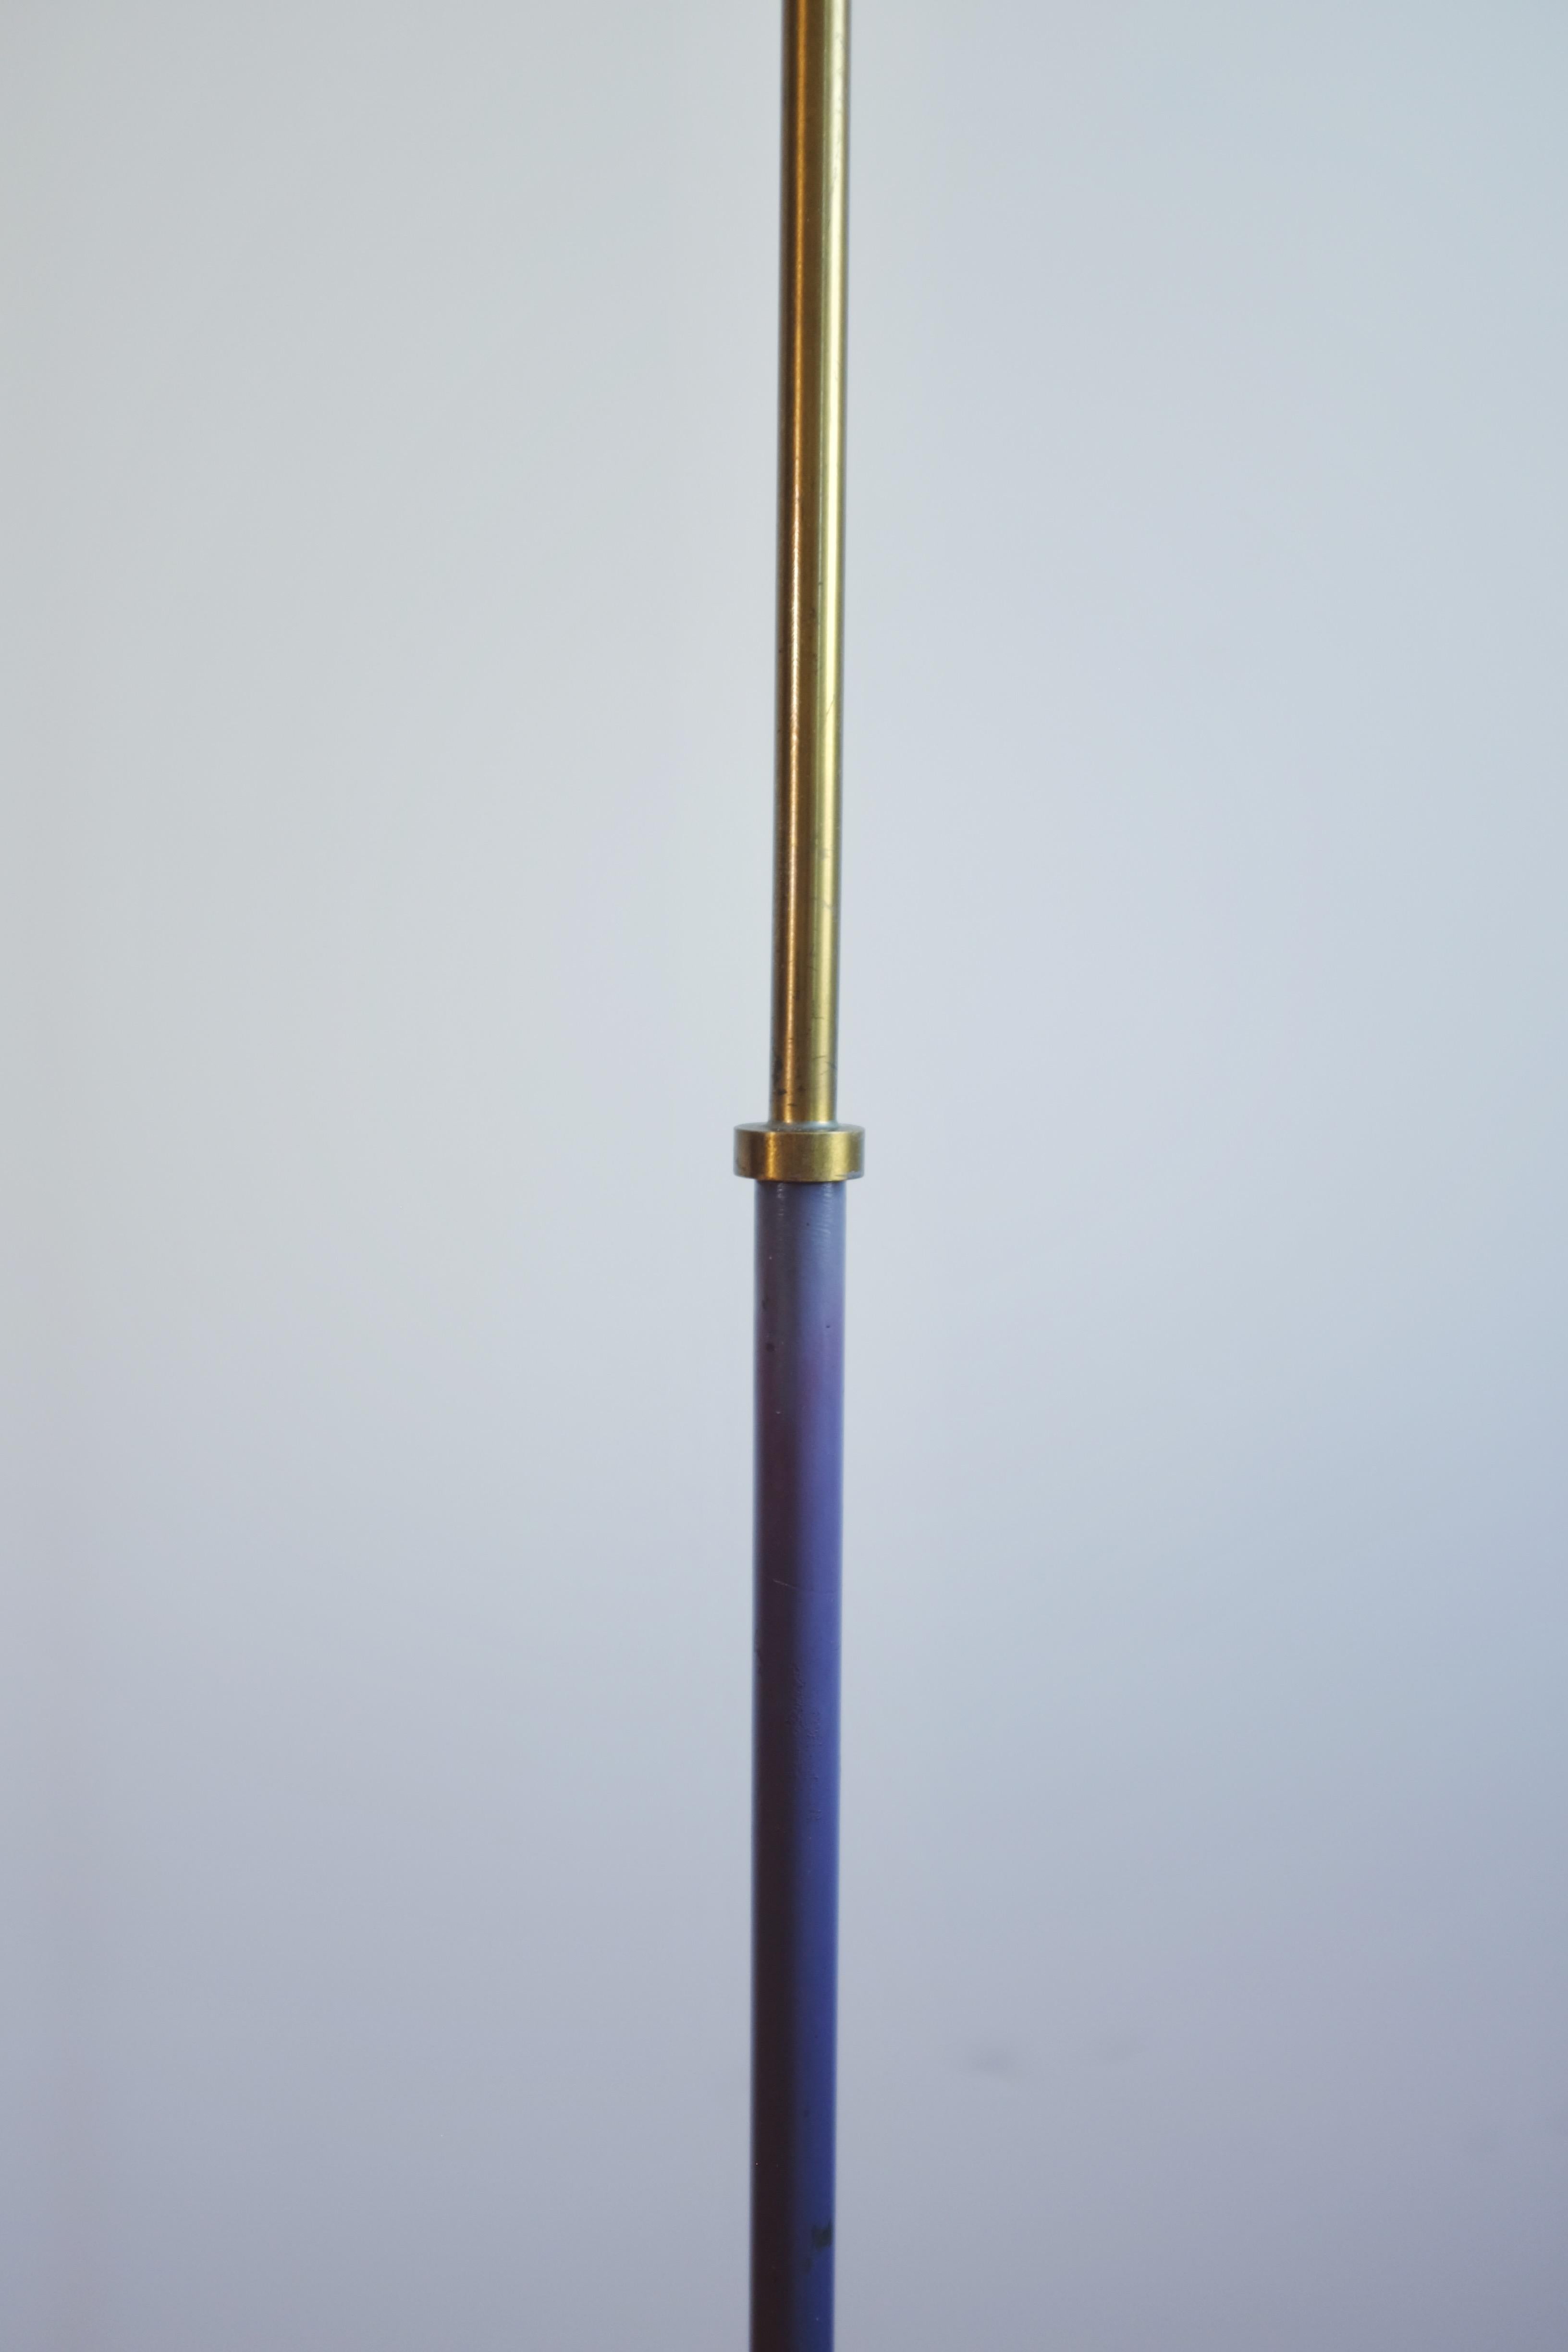 Rare lampadaire des années 1950 en métal peint lilas et laiton, modèle S-1871 de Hans-Agne Jakobsson. Produit par la propre entreprise du designer, Hans-Agne Jakobsson AB, à Markaryd, en Suède. Usure appropriée à l'âge du pied avec patine et petites